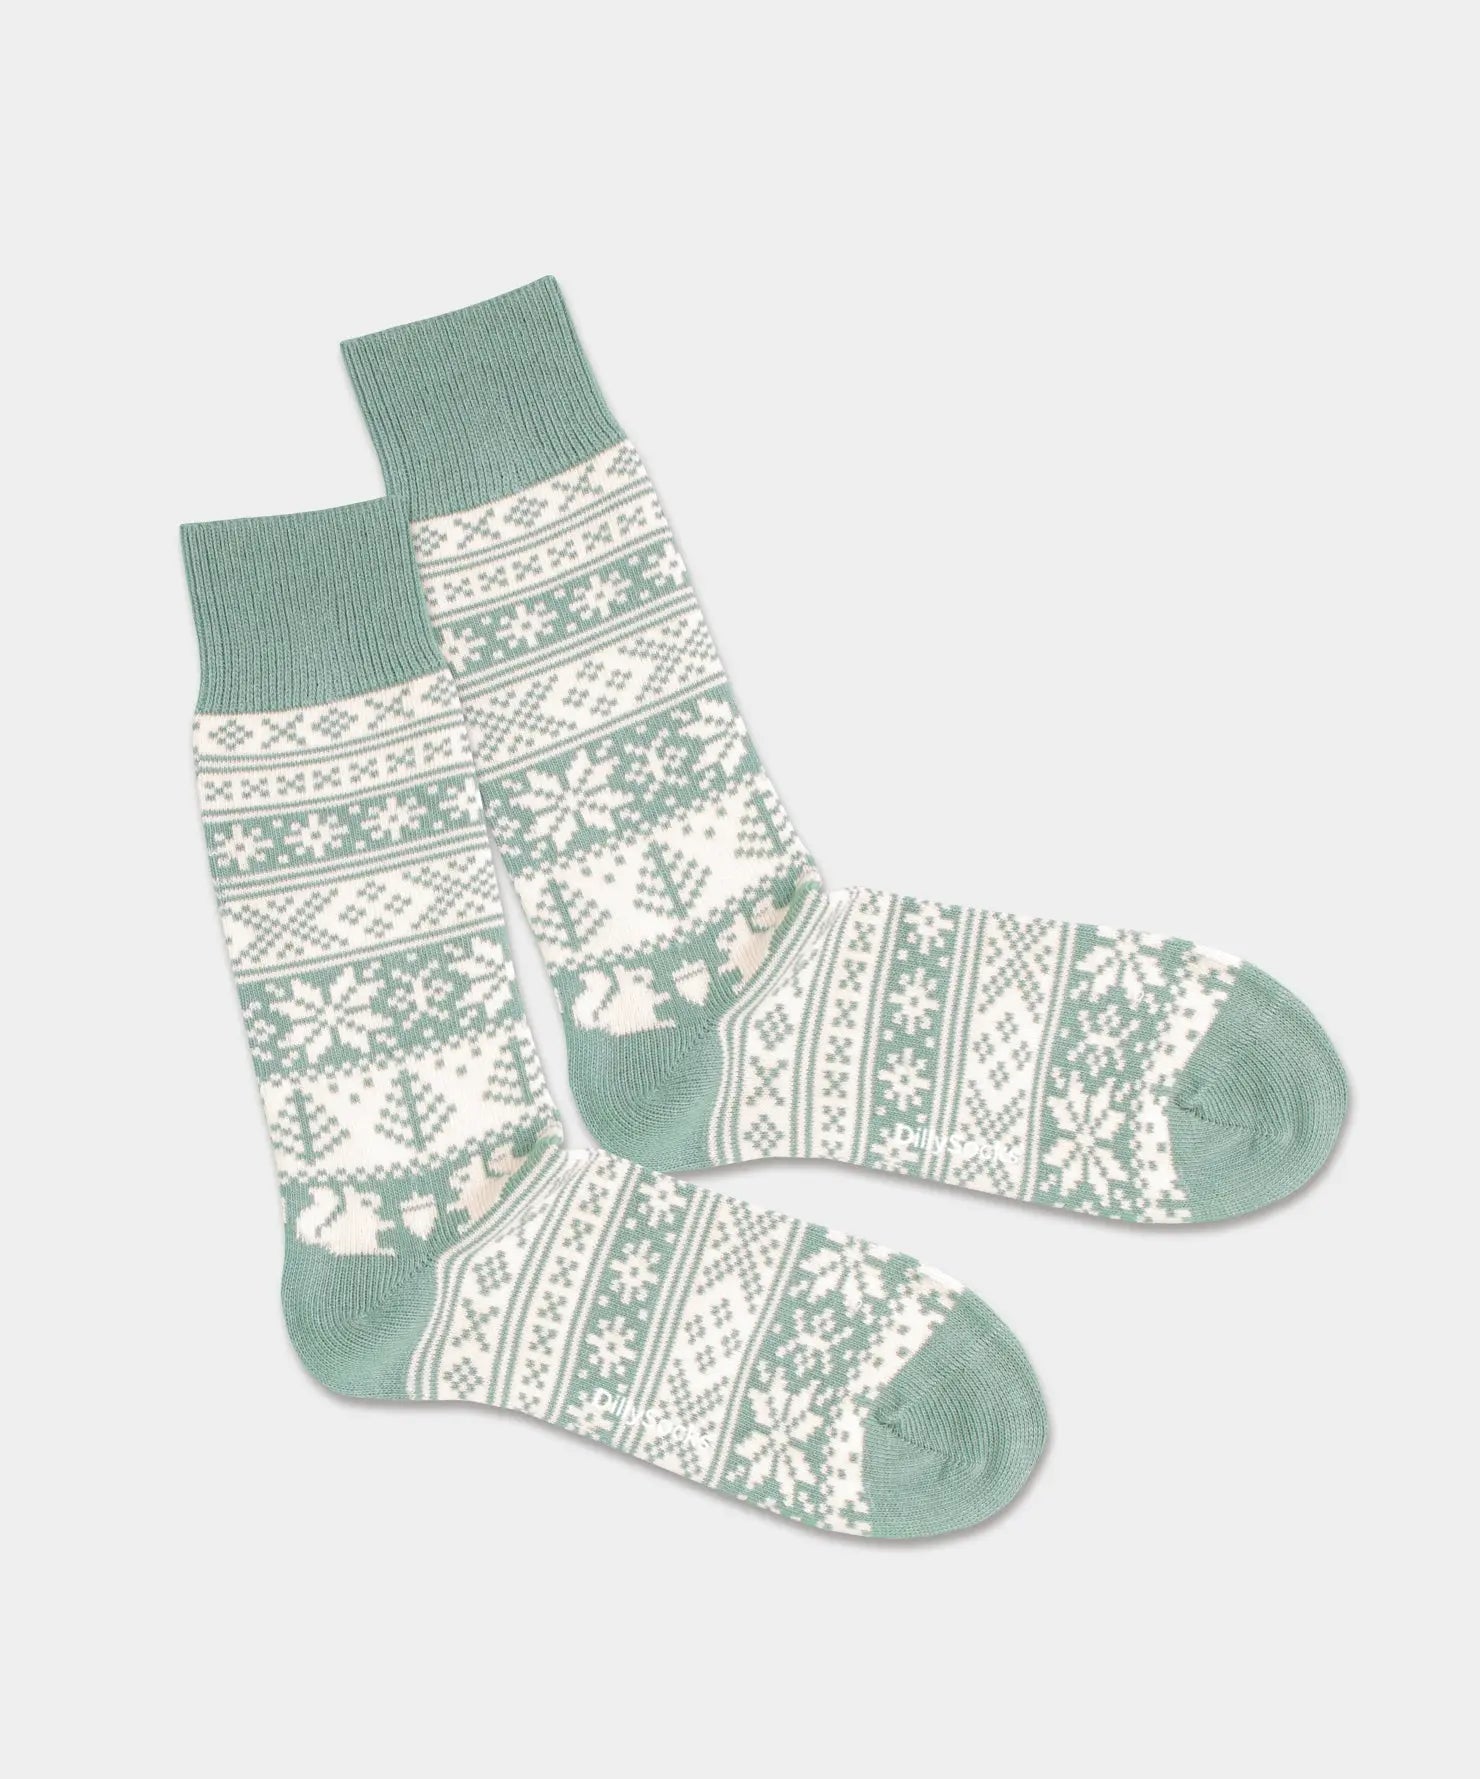 - Socken in Türkis mit Nordisch Motiv/Muster von DillySocks